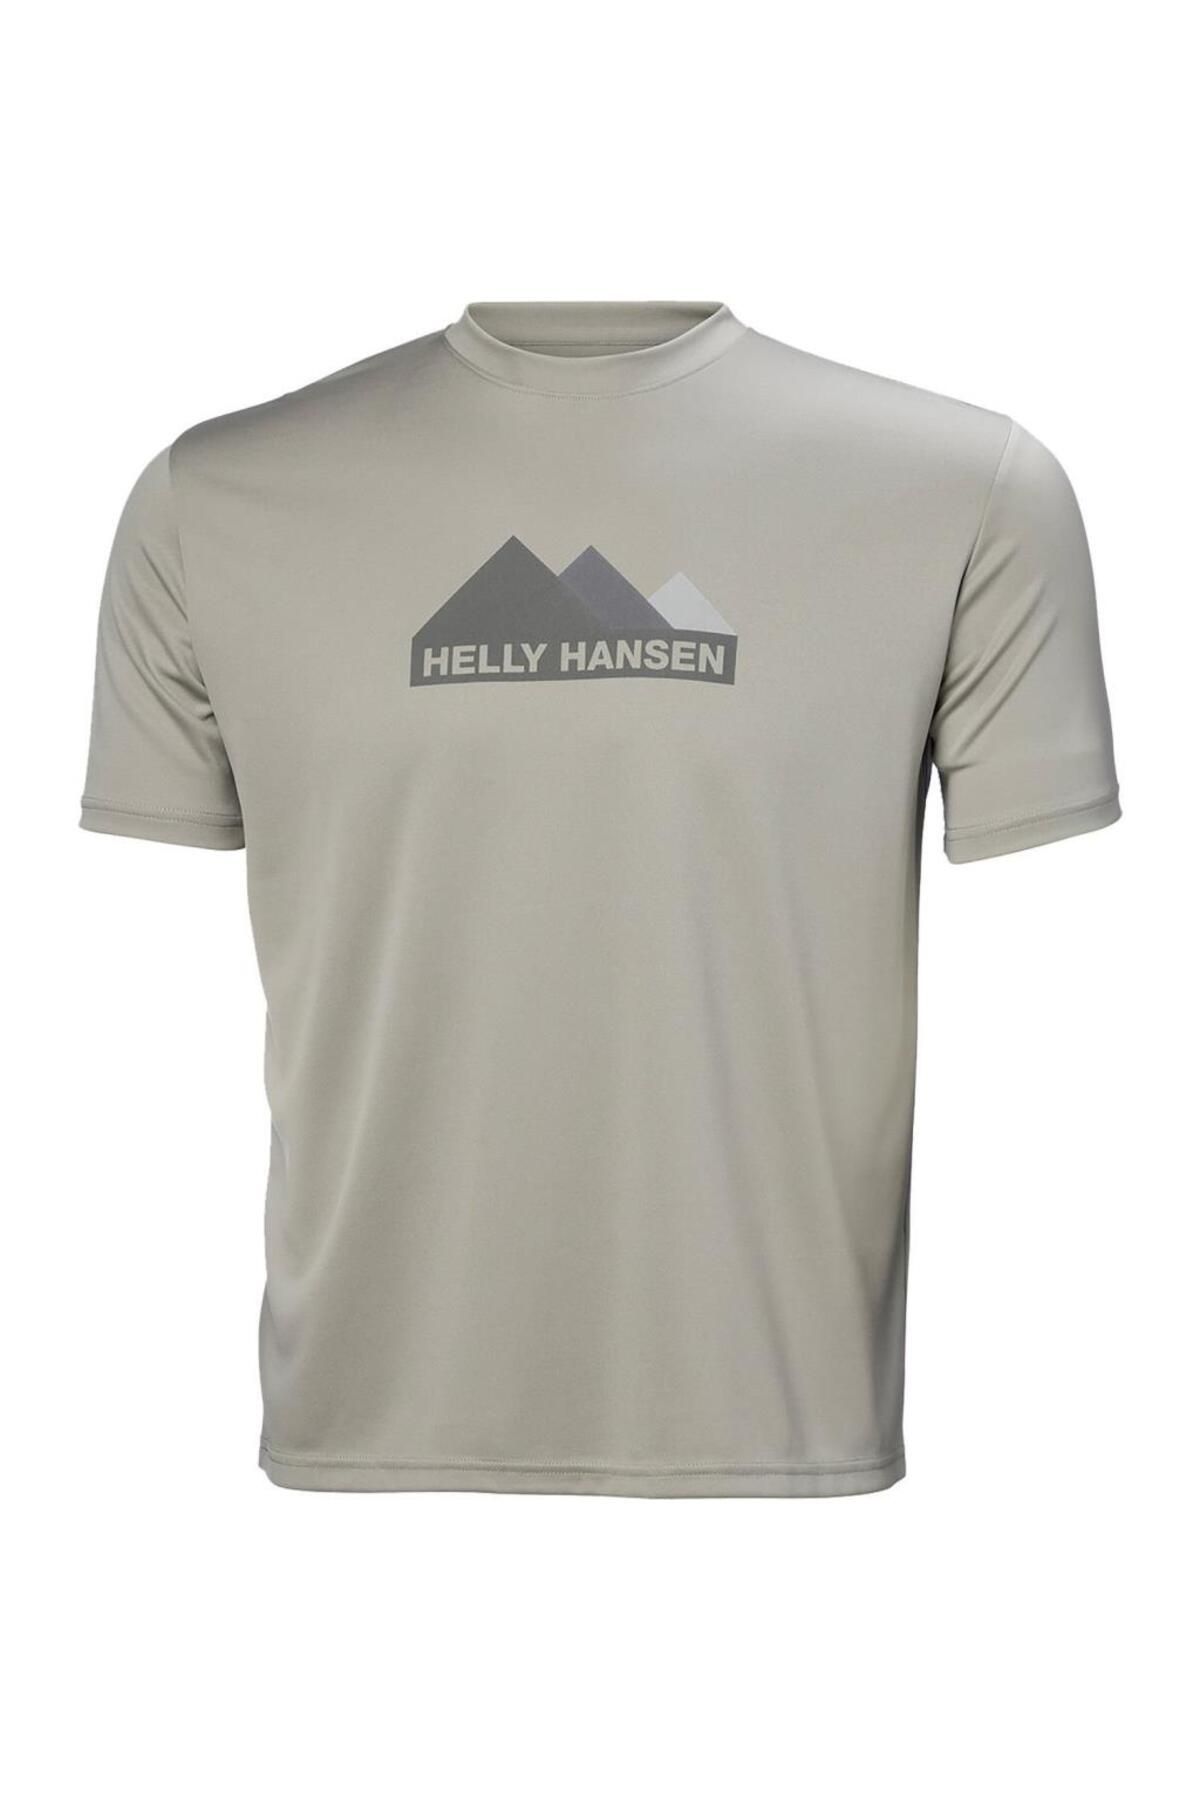 Helly Hansen Tech Graphic Erkek T-shirt